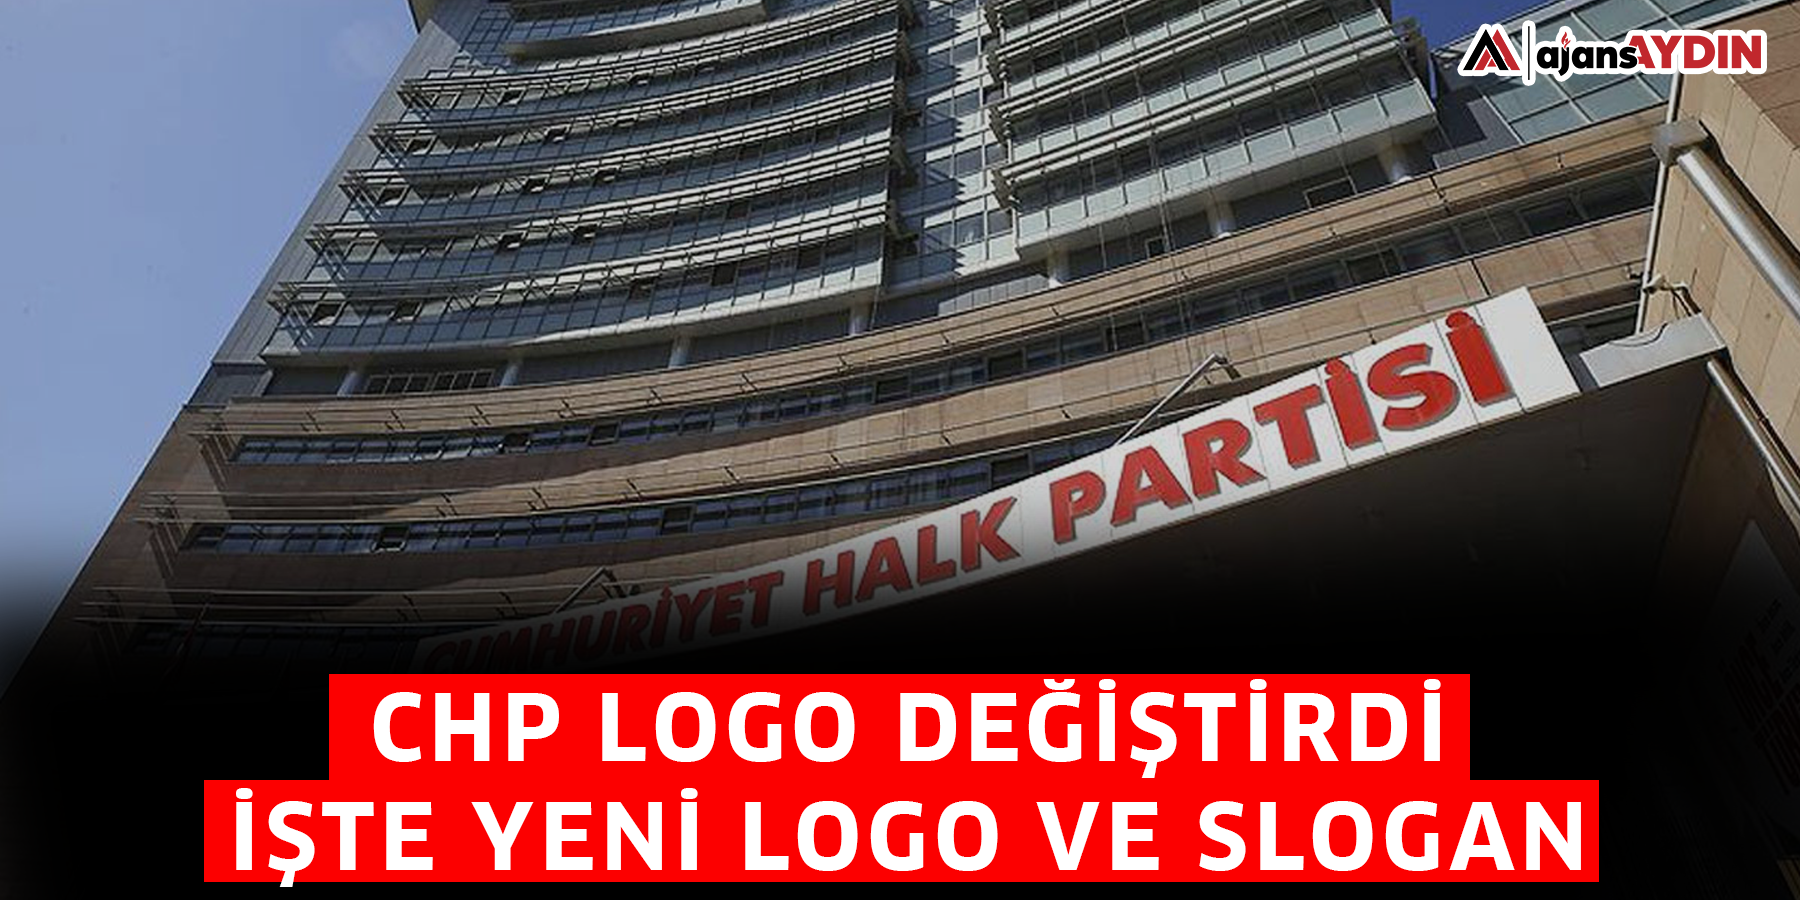 CHP logo değiştirdi. İşte yeni logo ve slogan